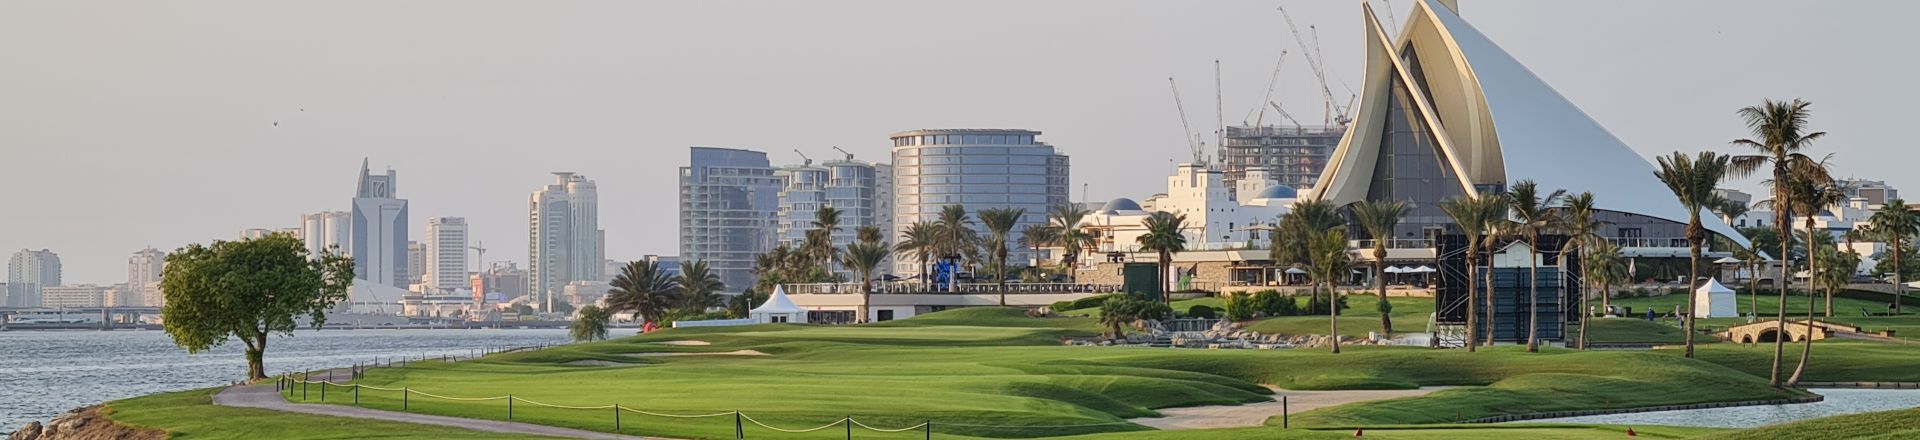 Golf Holidays in the UAE at Dubai Creek Golf Club